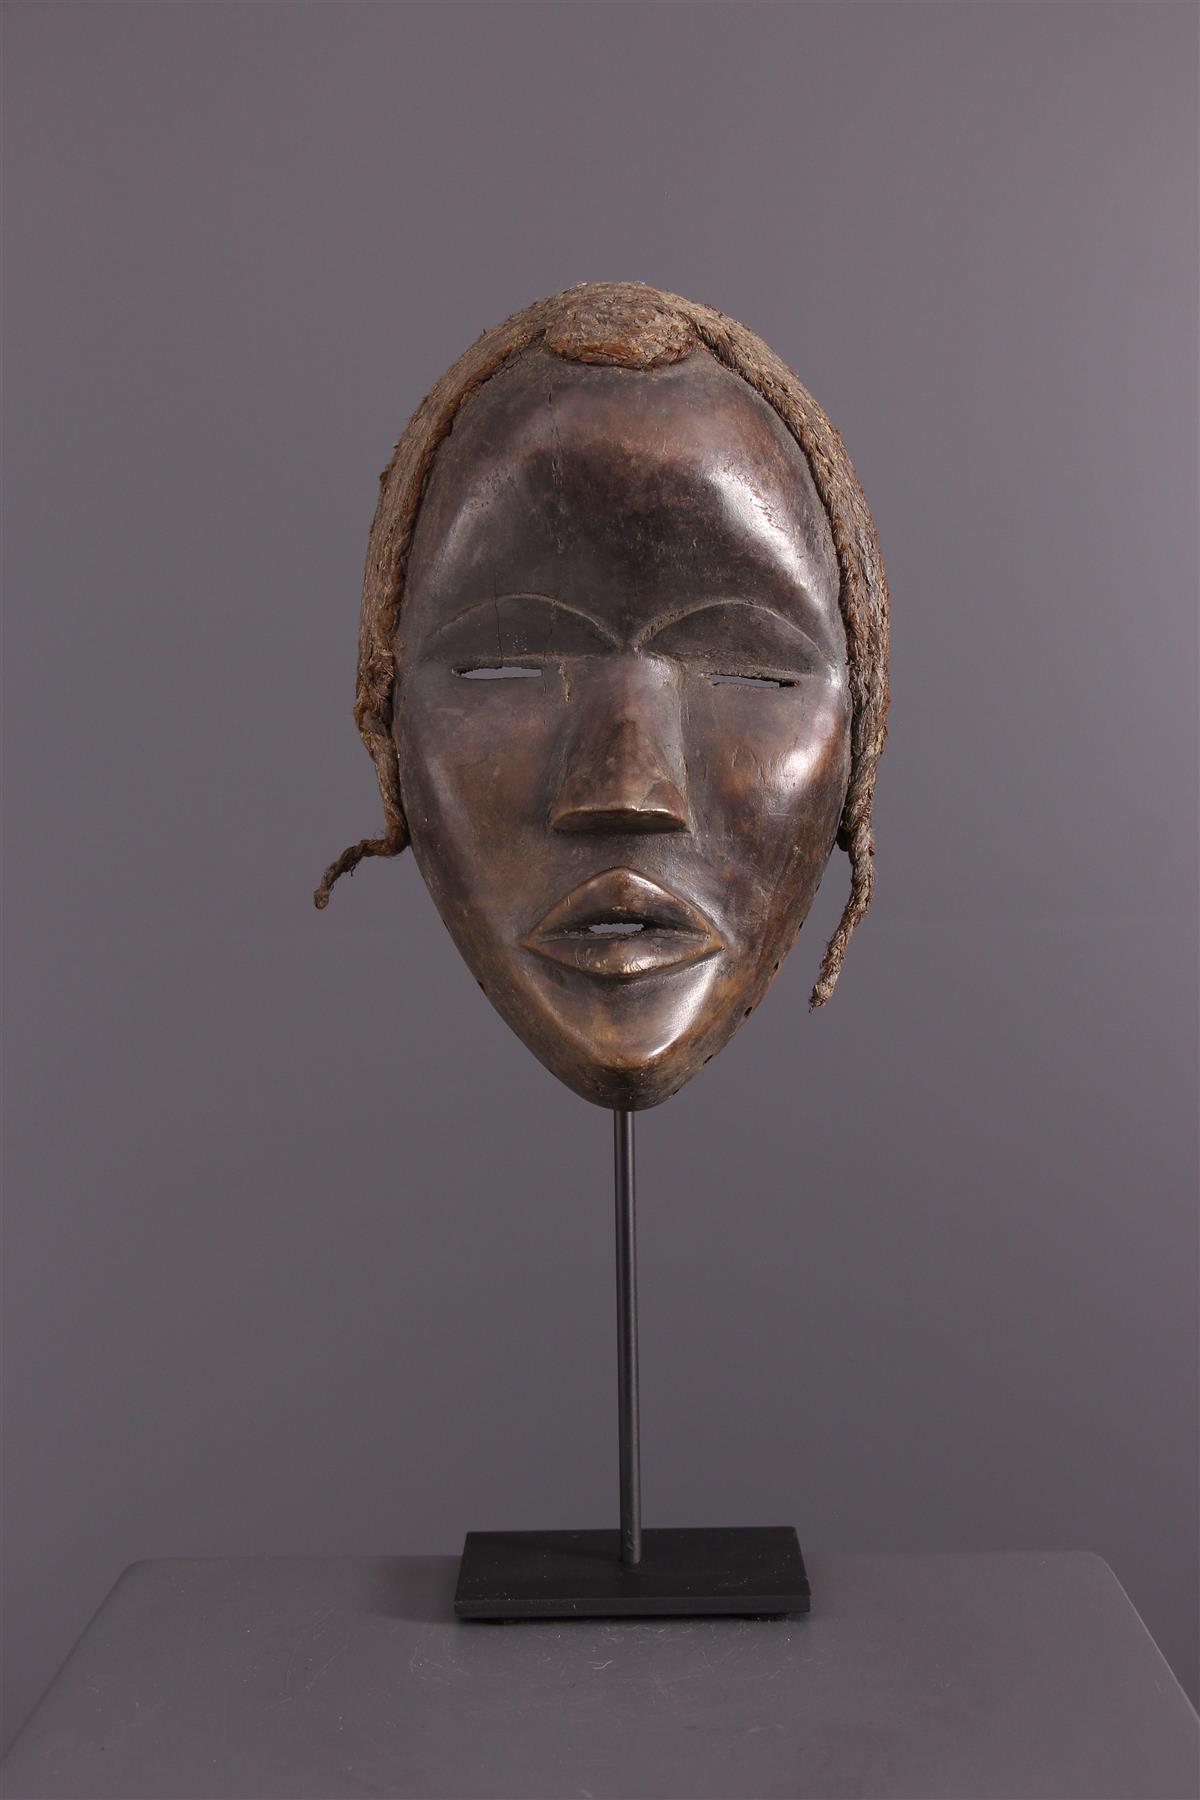 Dan Mask - Tribal art